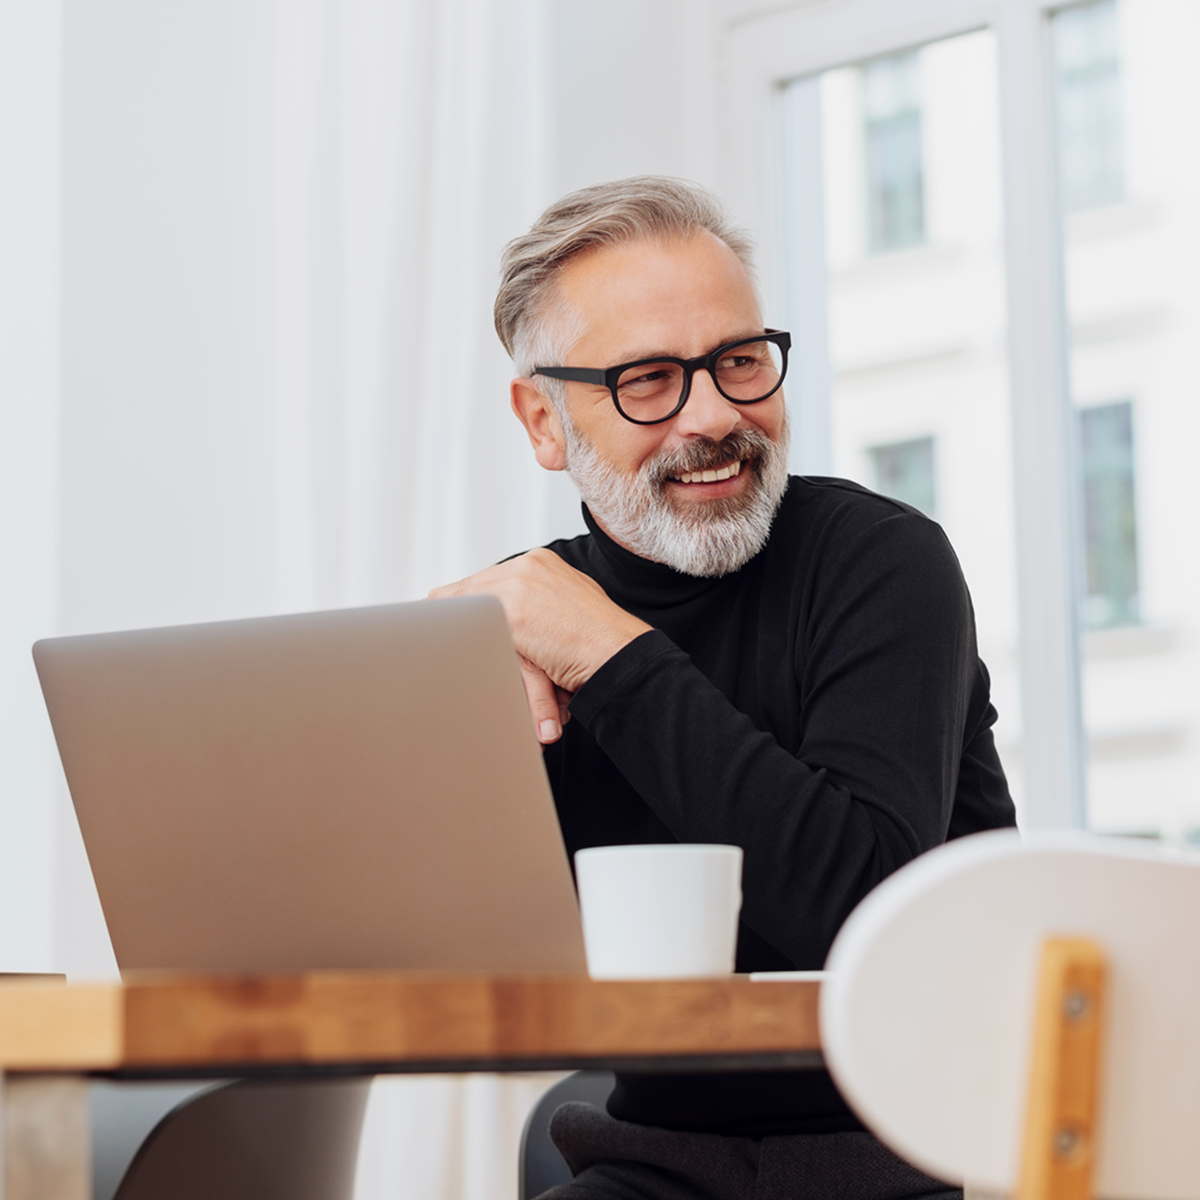 Grauhaariger Mann mit Vollbart und Brille sitzt vor Laptop und lächelt